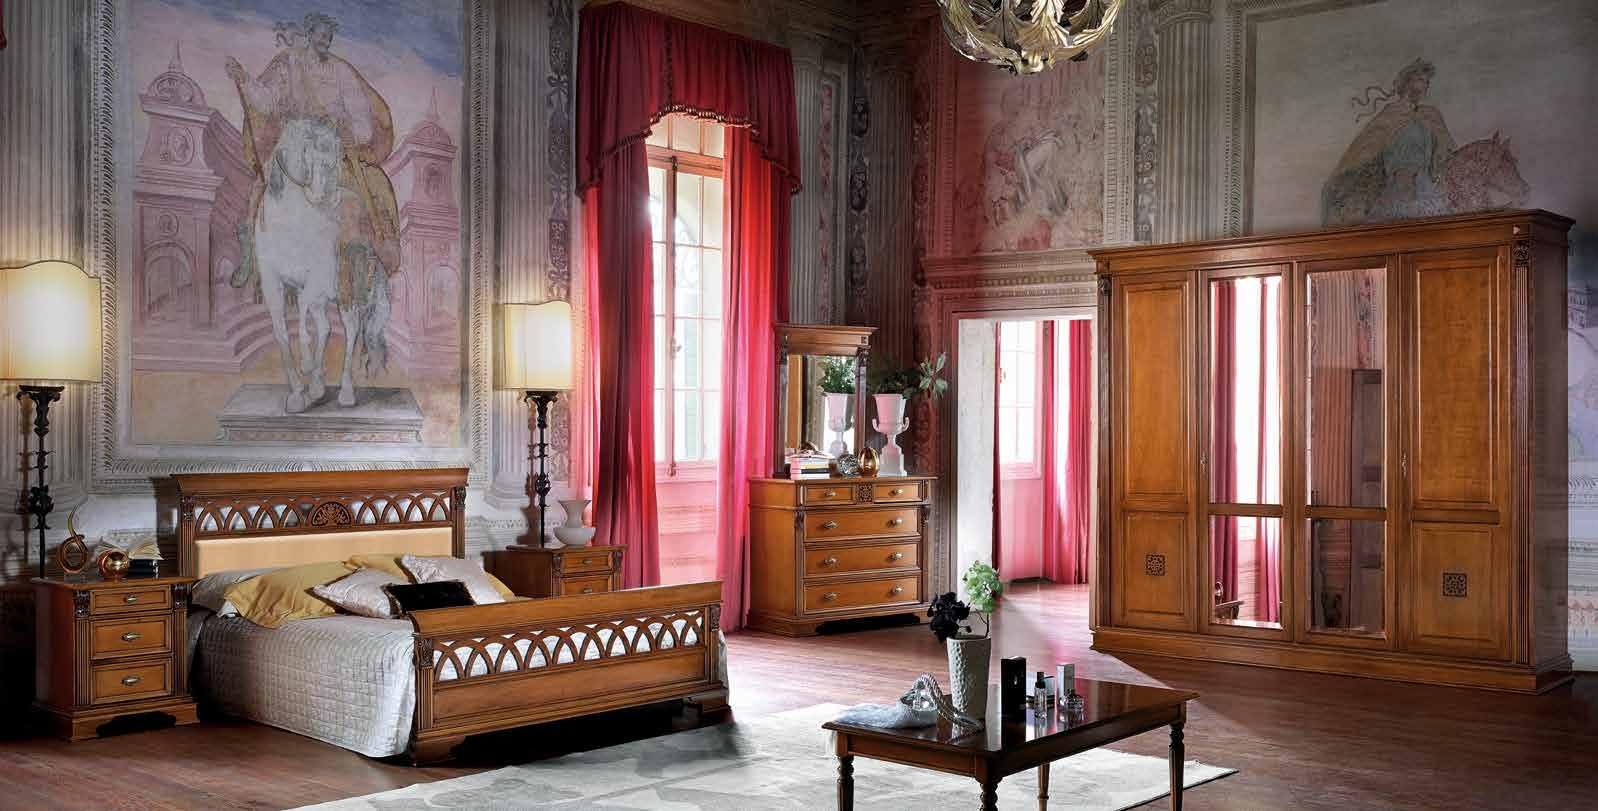 Шкаф платяной Claudio Saoncella Puccini, 4-х дверный  с зеркалами, 256x65x240 см, цвет:  вишня / белый с золотом (44582)44582